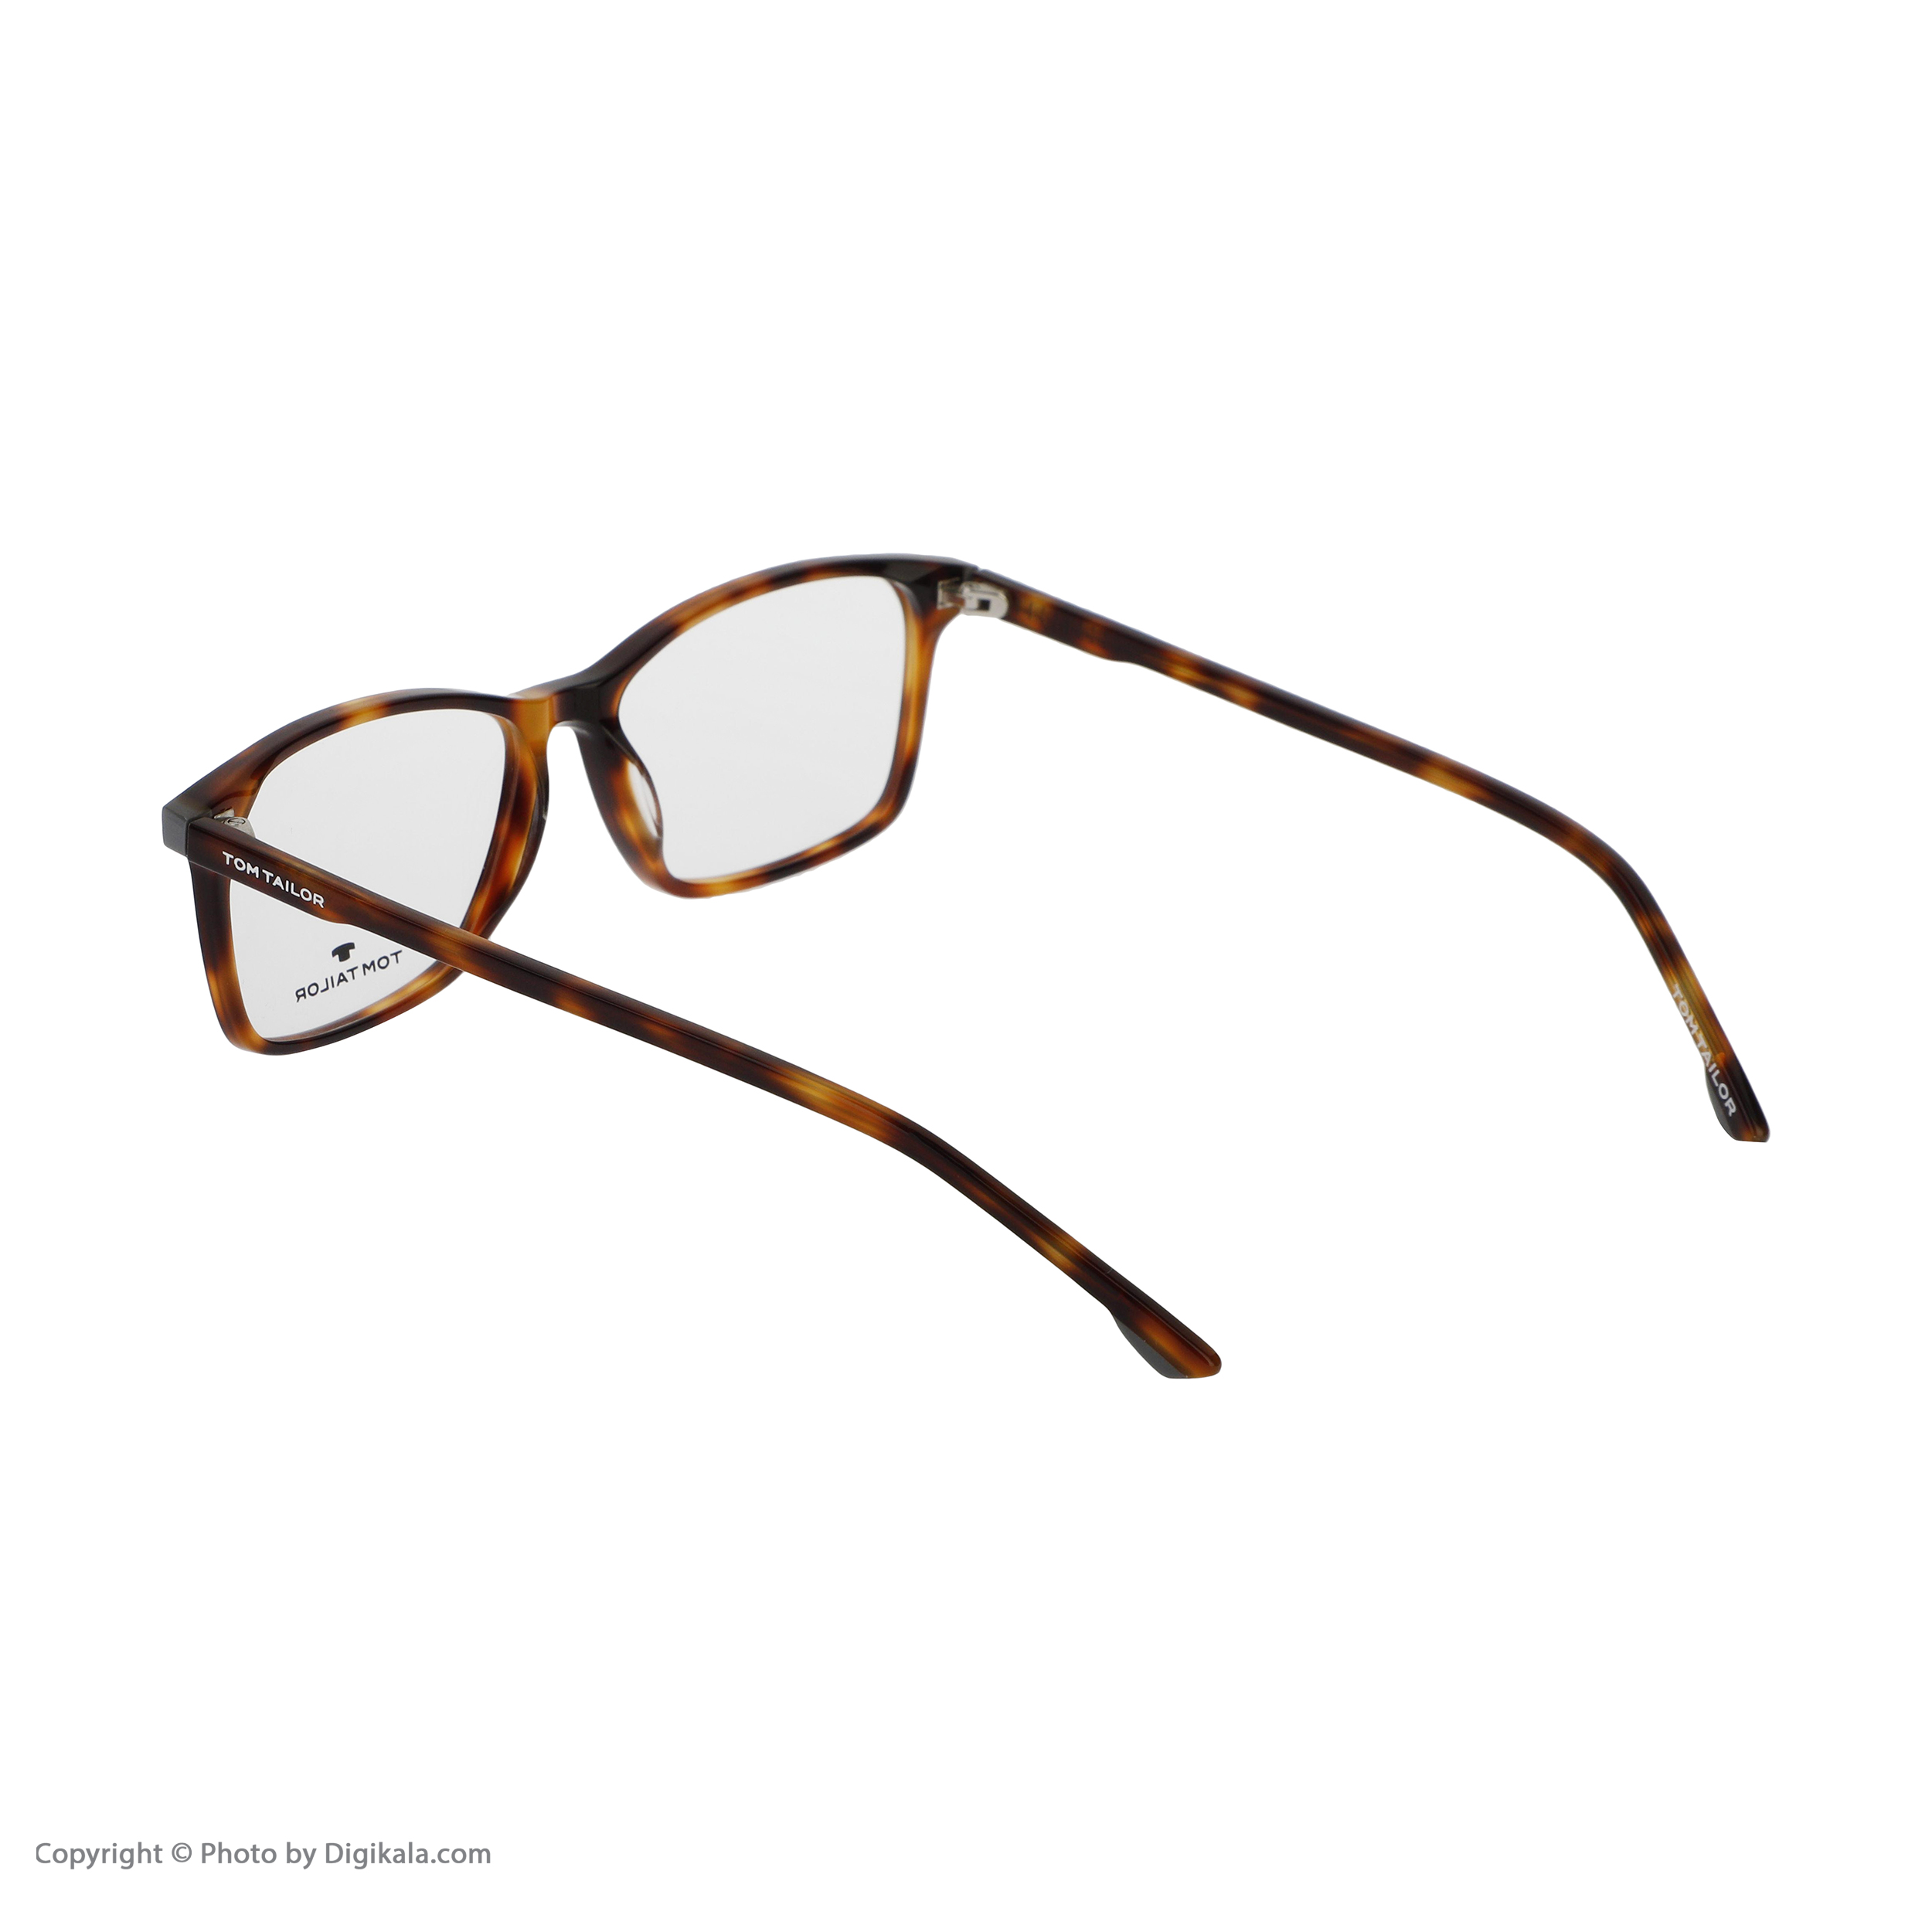 فریم عینک طبی تام تیلور مدل 60463-414 -  - 3